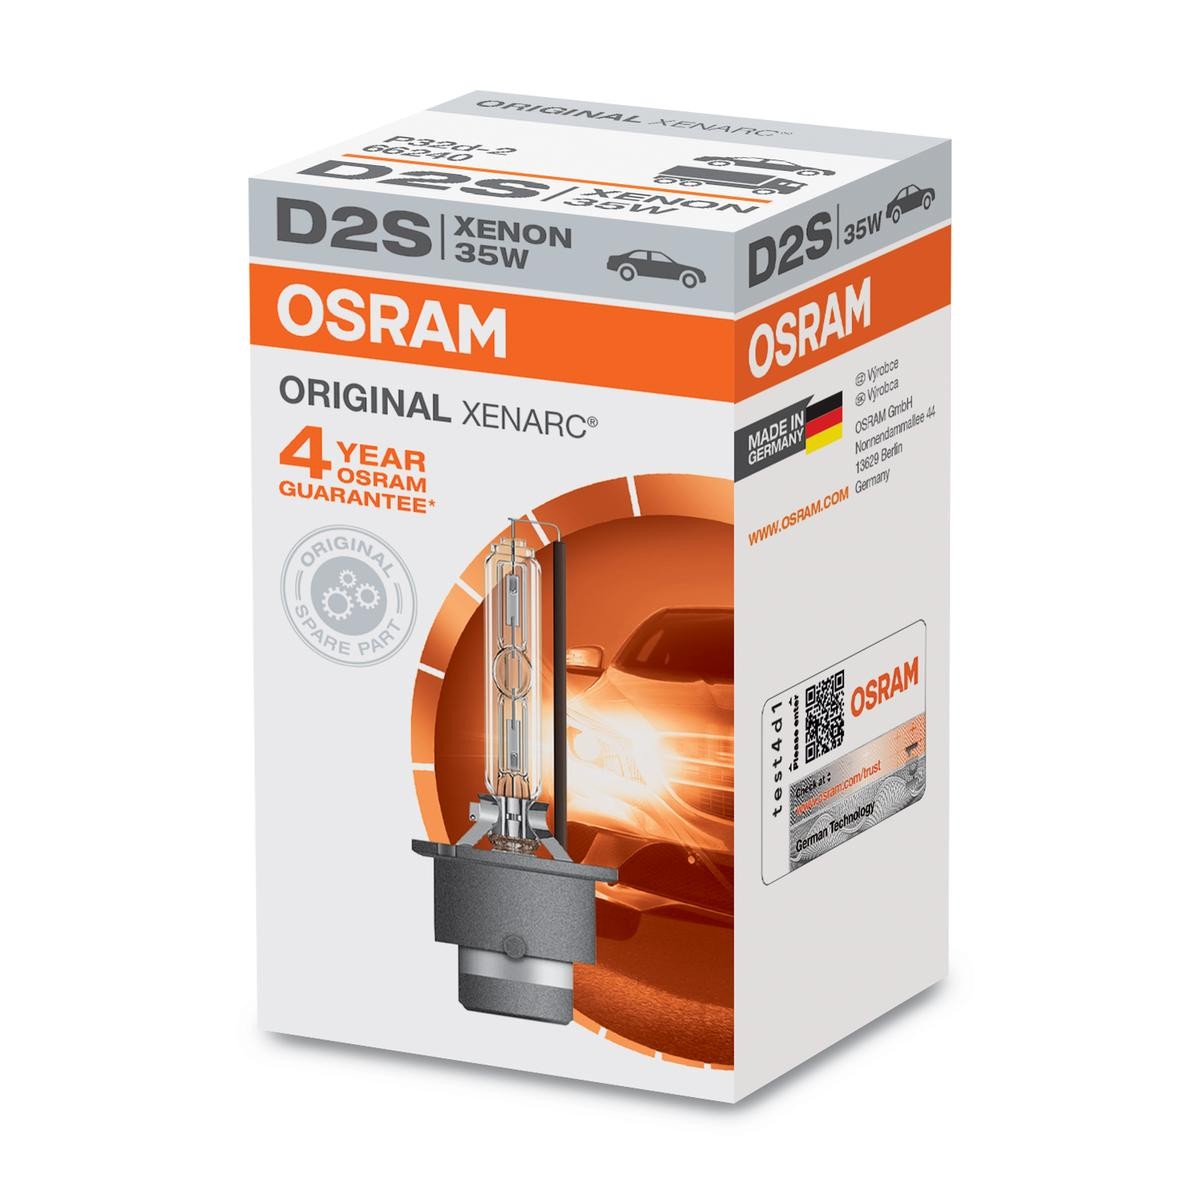 Grootlicht lamp 66240 van OSRAM